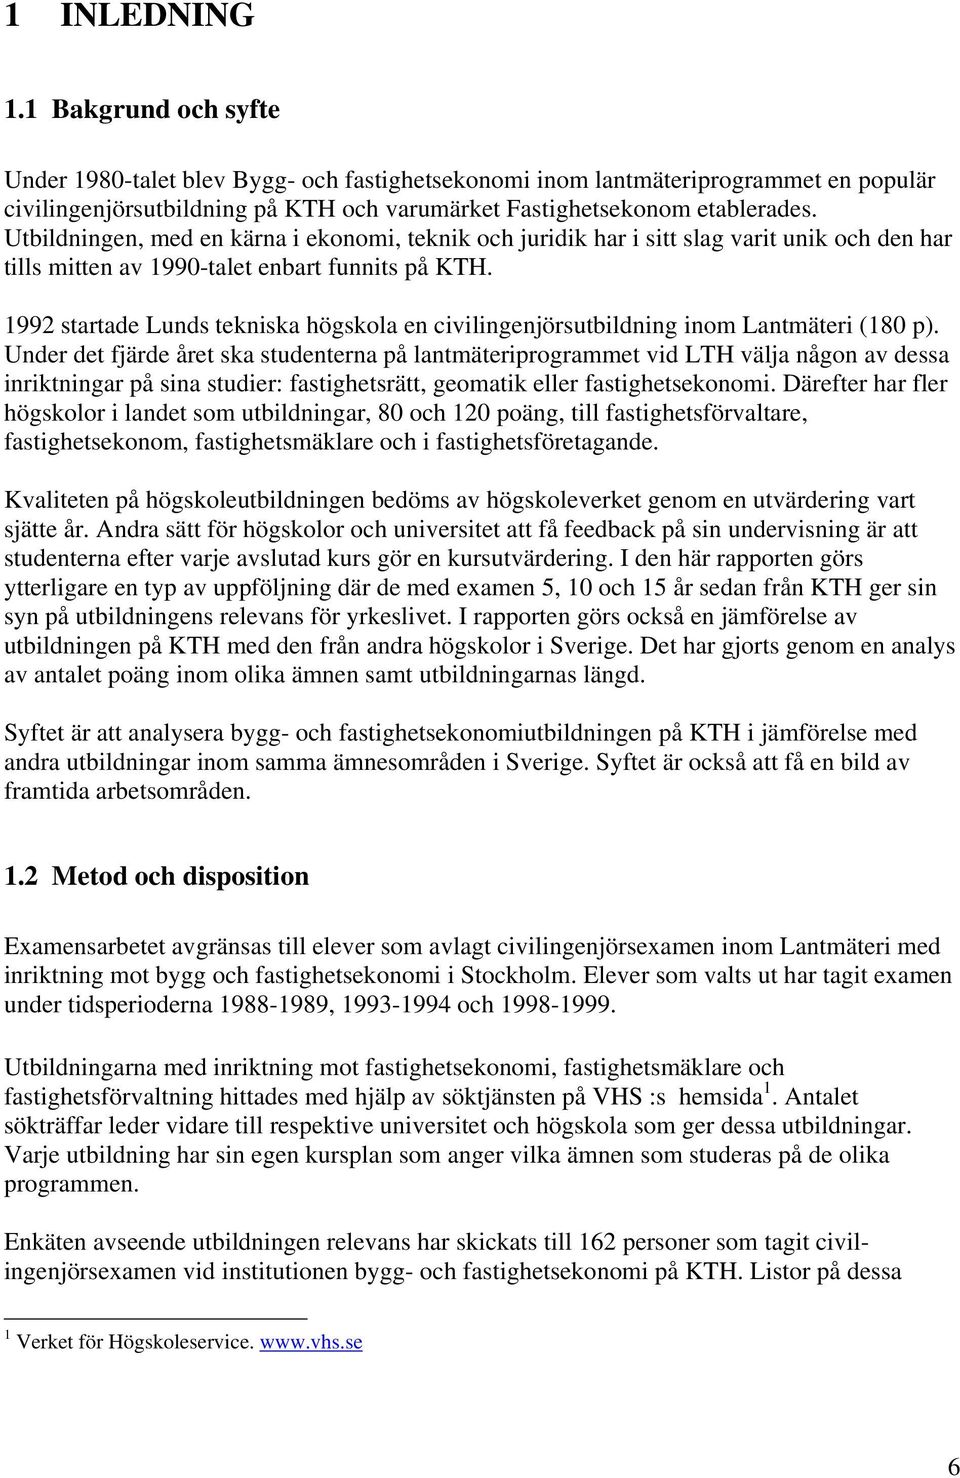 1992 startade Lunds tekniska högskola en civilingenjörsutbildning inom Lantmäteri (180 p).